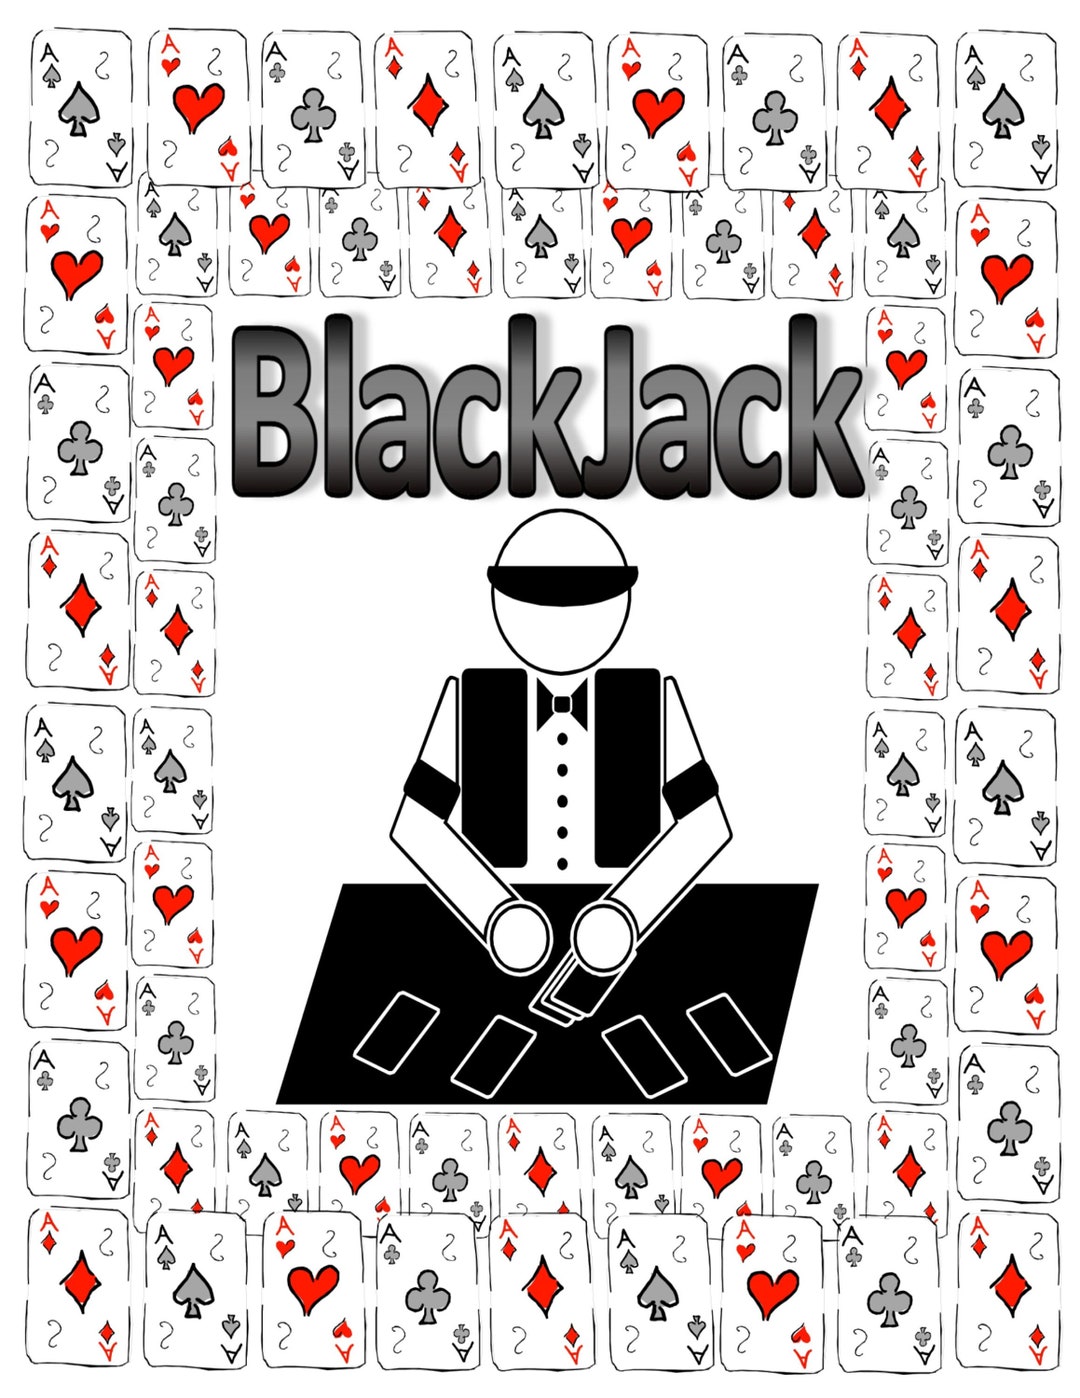 black jack as